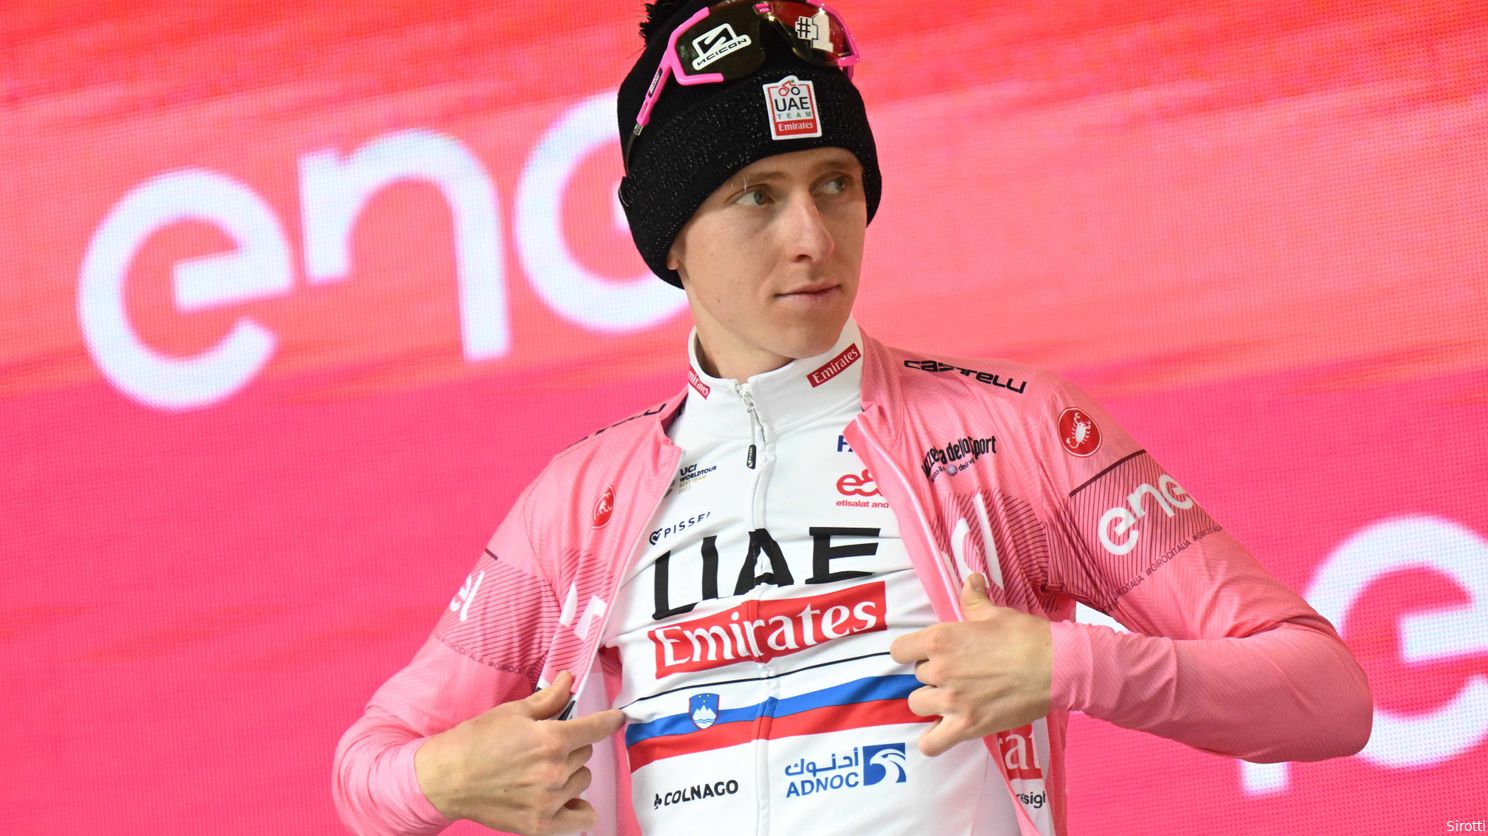 Pogacar bijt op zijn tong, O'Connor fileert RCS na Giro-debacle: 'Dit is de slechtst georganiseerde wedstrijd'